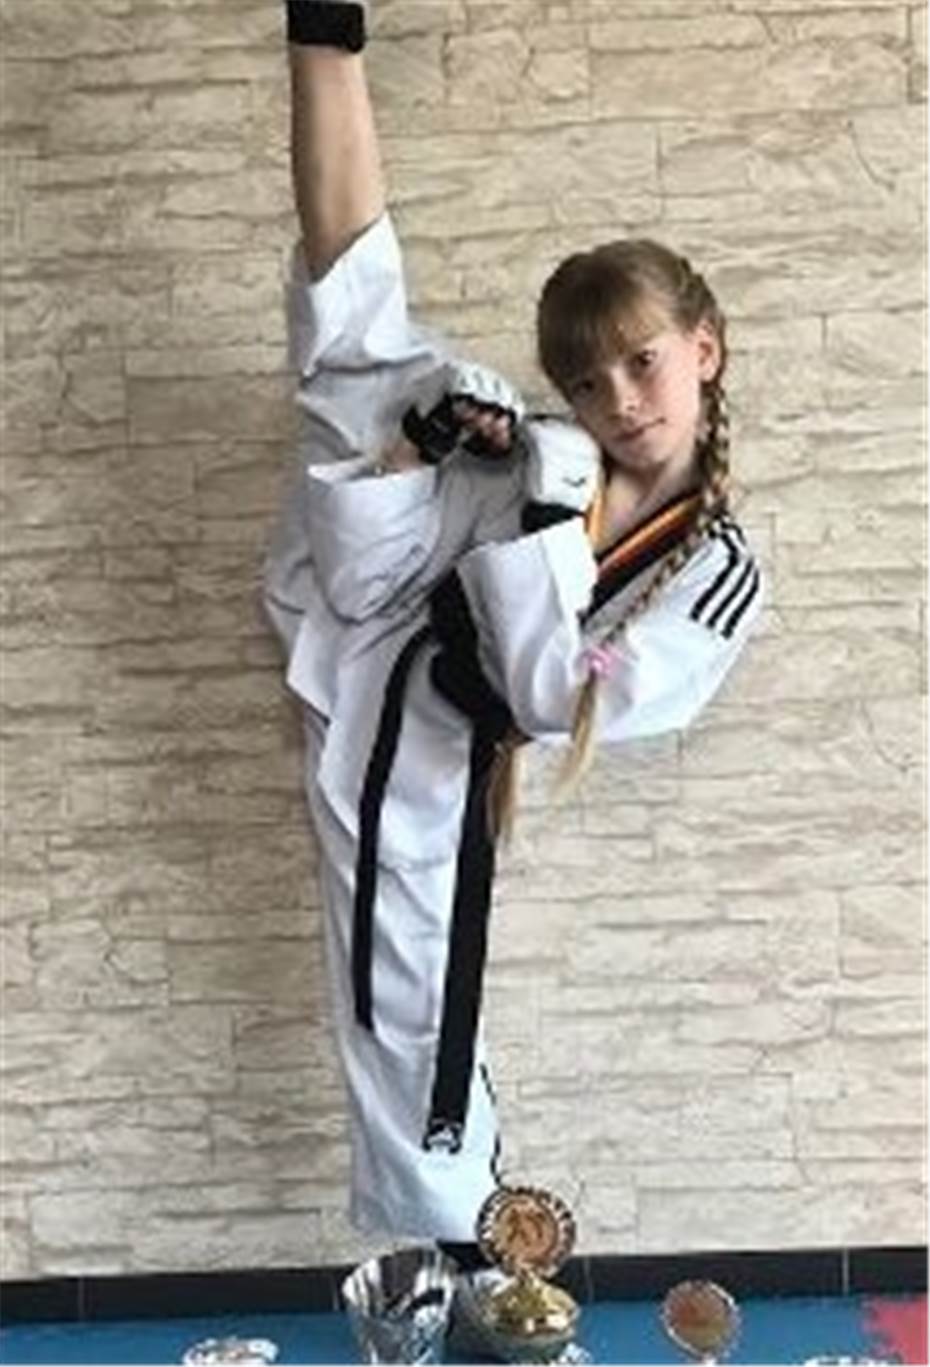 Taekwondo-Sportler für die Sportlerehrung nominiert